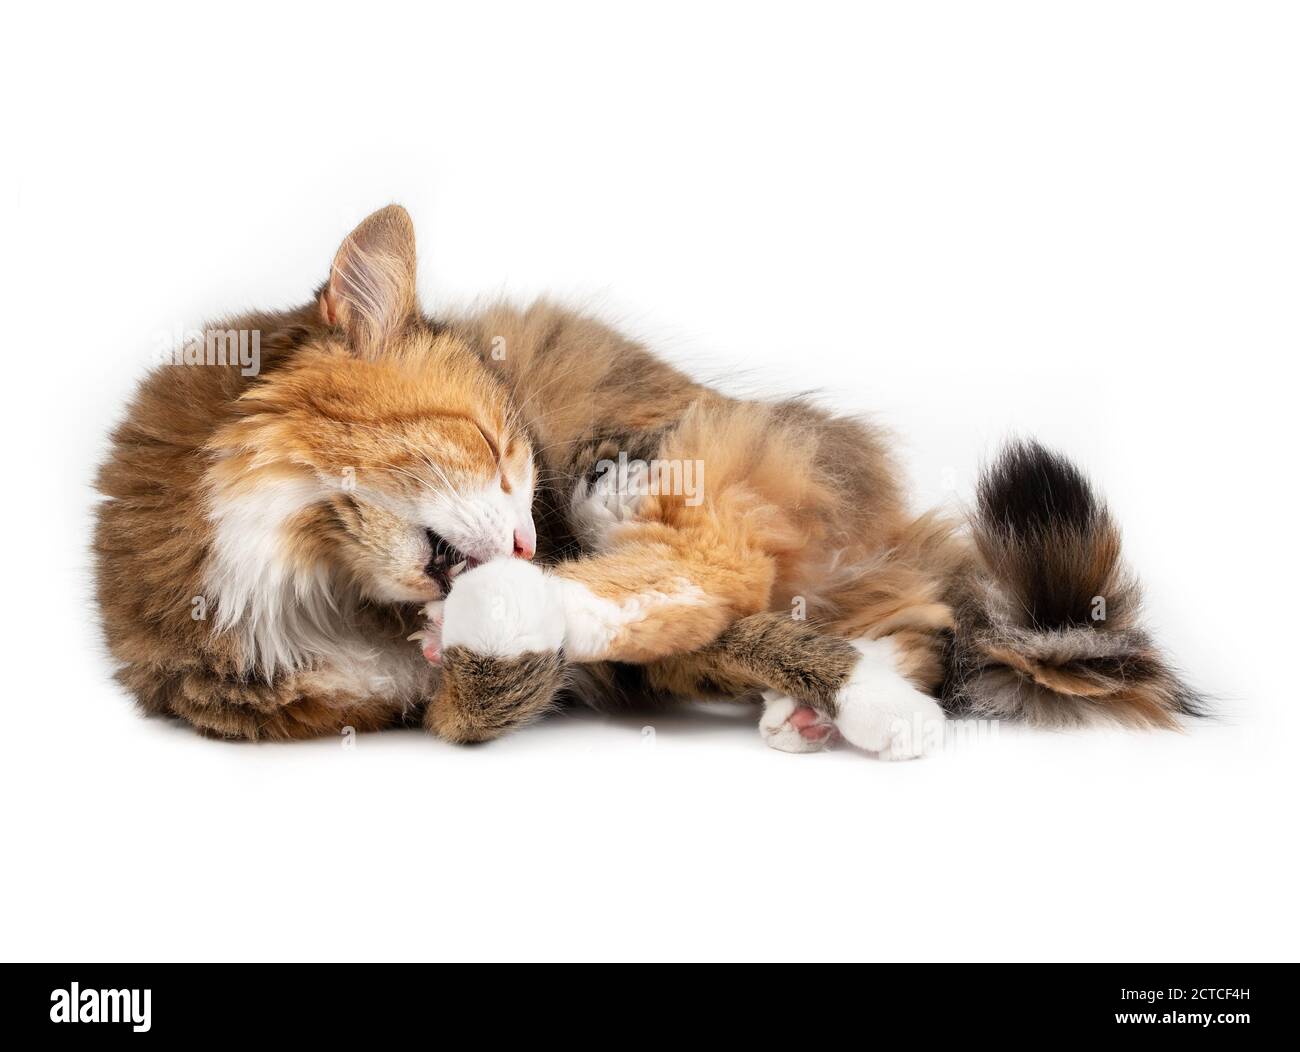 Entzückende Katze, die sich selbst putzt, seitlich liegend. Ganzkörperportrait einer entspannten bunten Kitty, die ihre Pfote leckt, während sie ihren Schwanz führt. Stockfoto